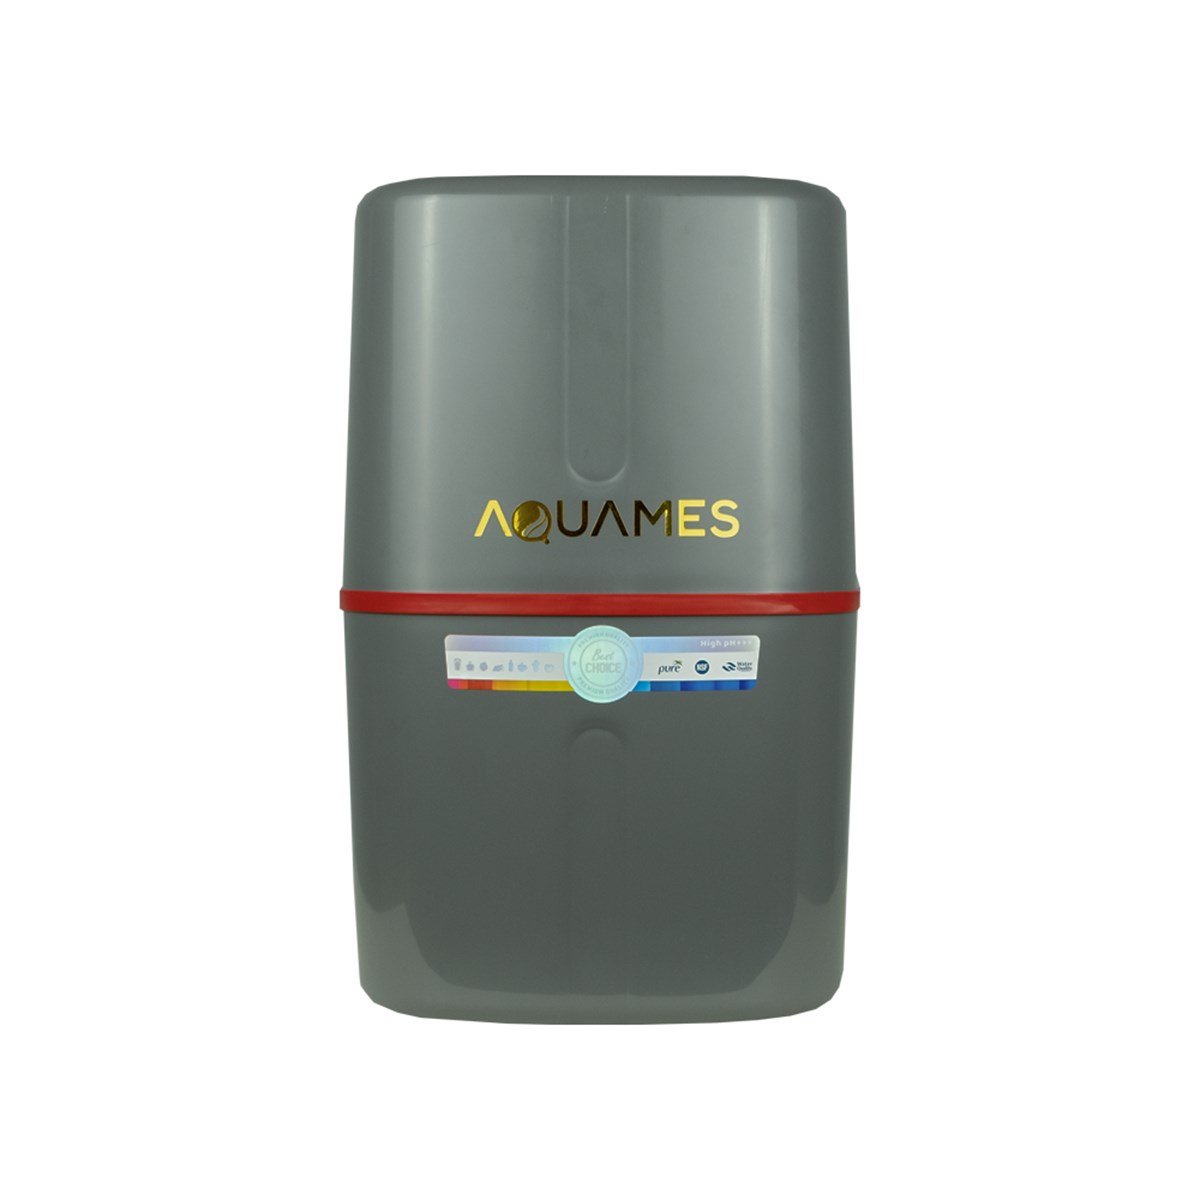 Aquames - Combo 5 Aşamalı Su Arıtma Cihazı